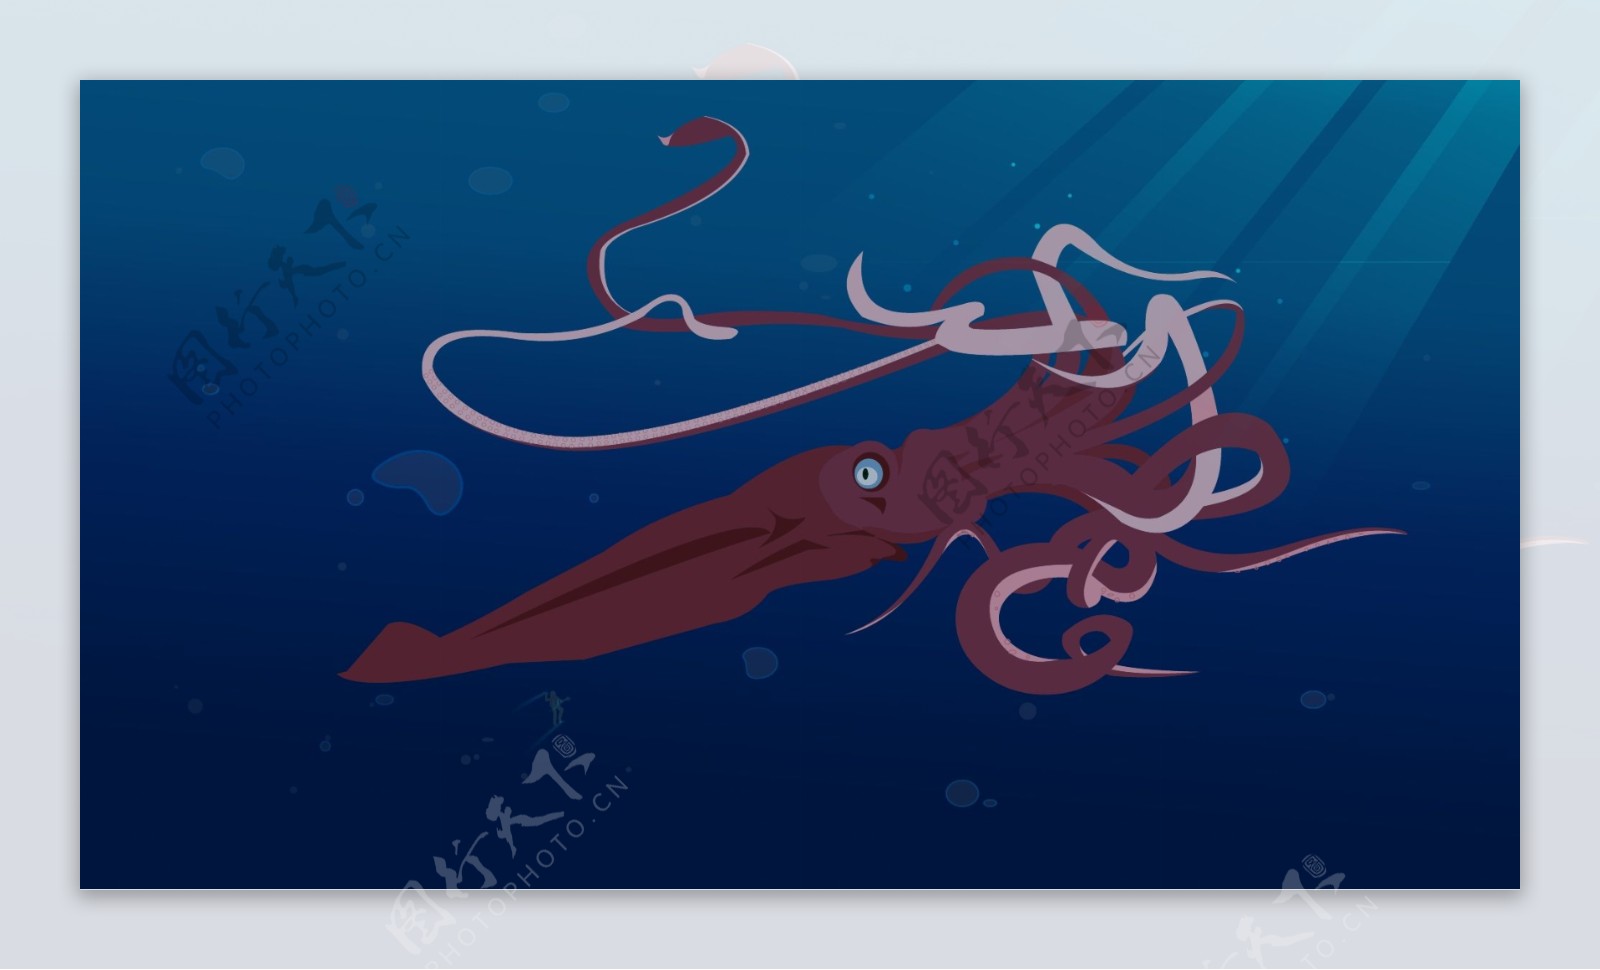 可怕的红色恶魔，生活在千米海底的洪堡乌贼，超过千只协同捕猎 - 哔哩哔哩